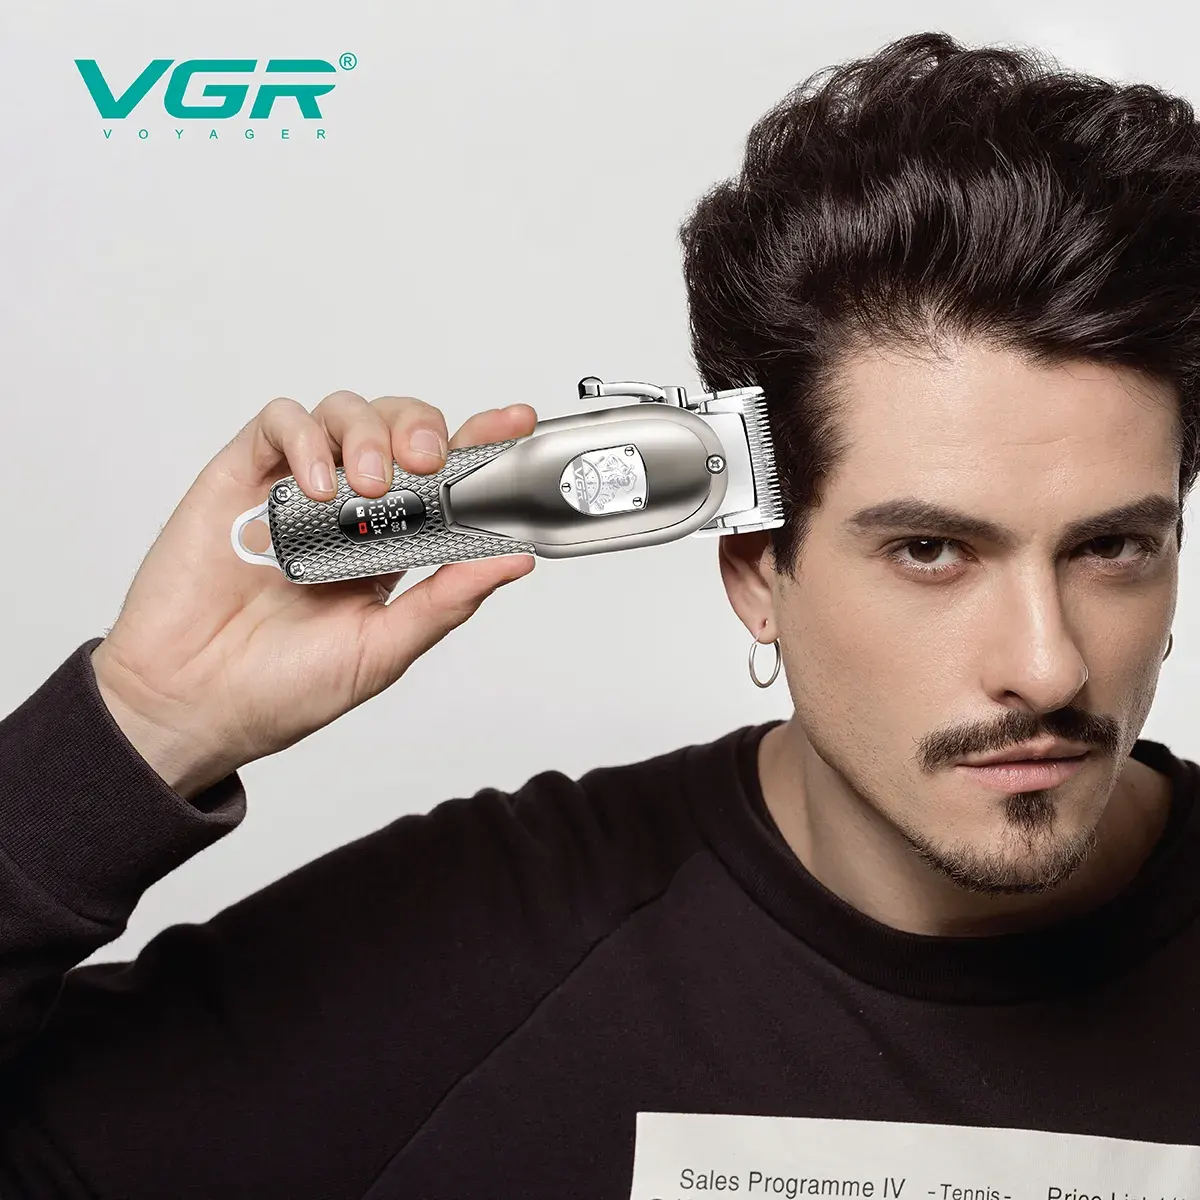 VGR Electric Shaver, 8 Watt, Silver, V-276